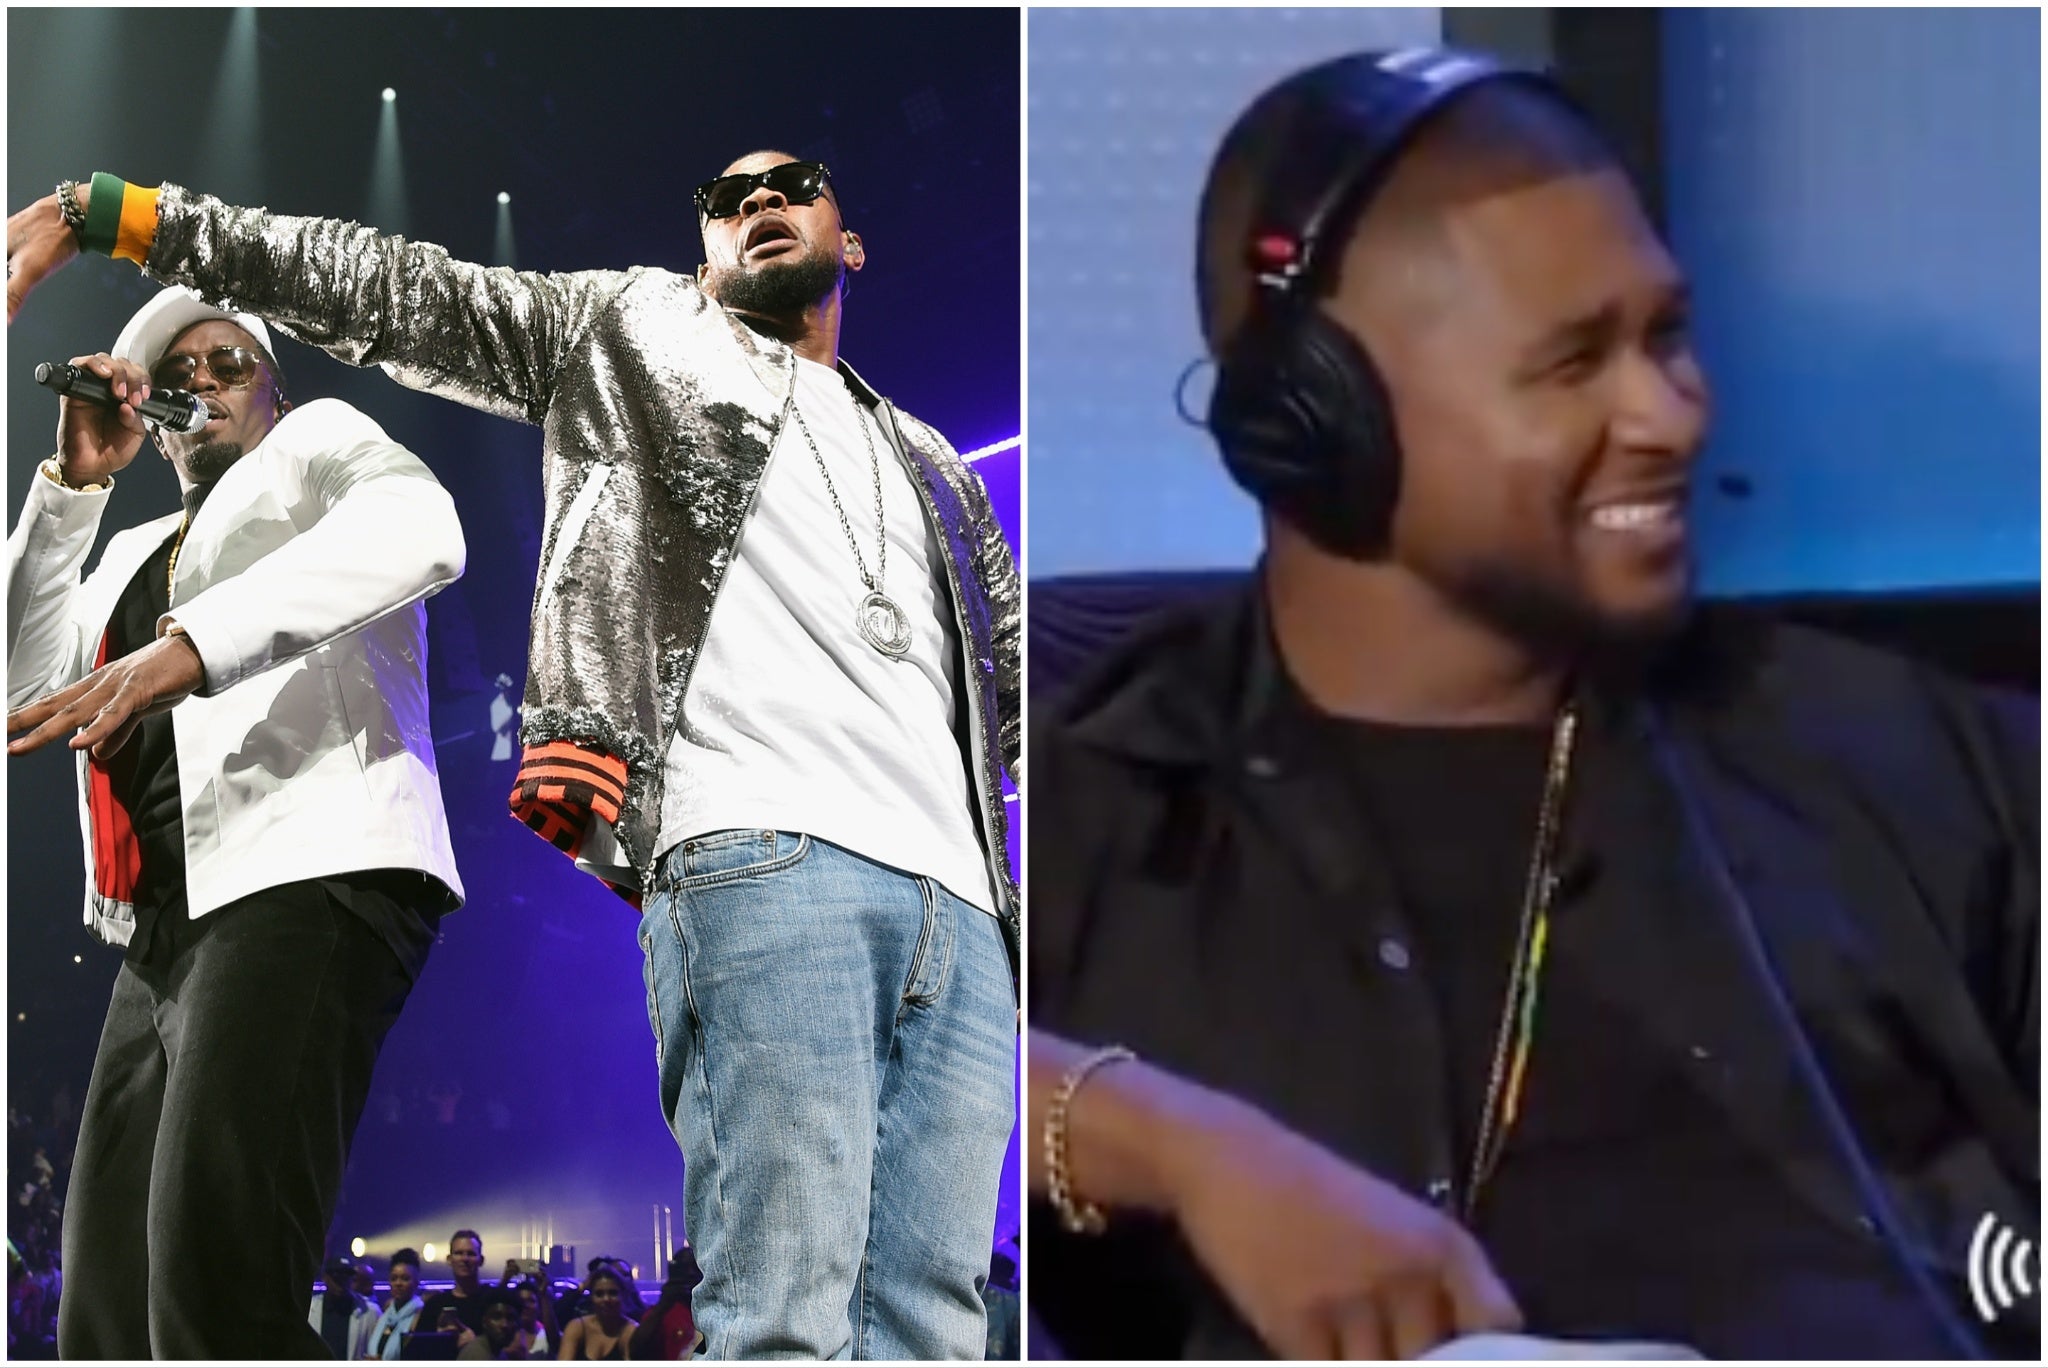 Usher nhớ lại trải nghiệm của mình khi ở nhà Diddy ở New York khi anh 13 tuổi